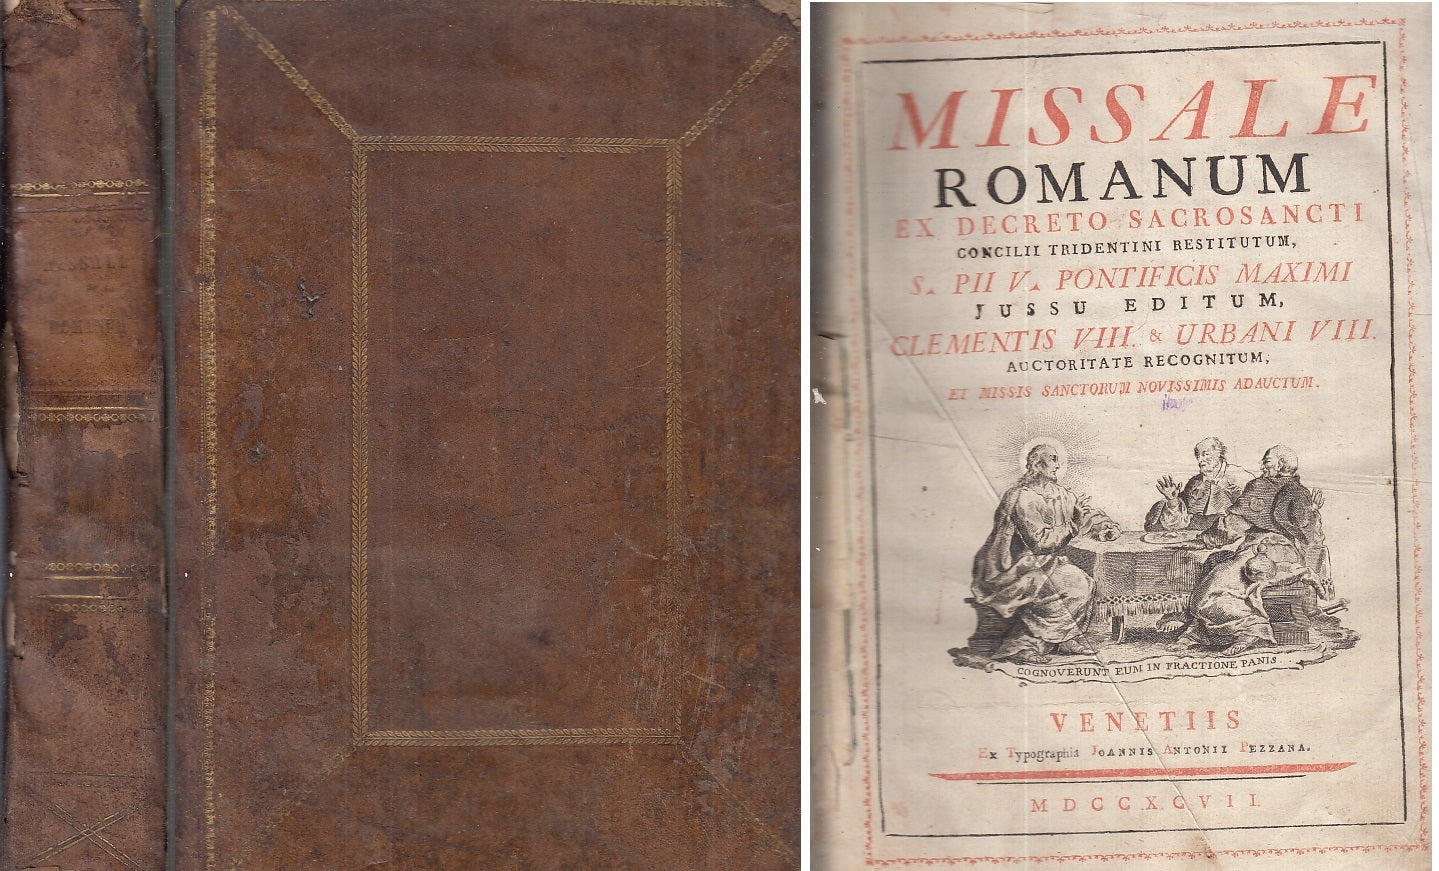 LH- MISSALE ROMANUM SACROSANCTI CONCILII TRIDENTINI SETTECENTINA- 1797- C- XFS95